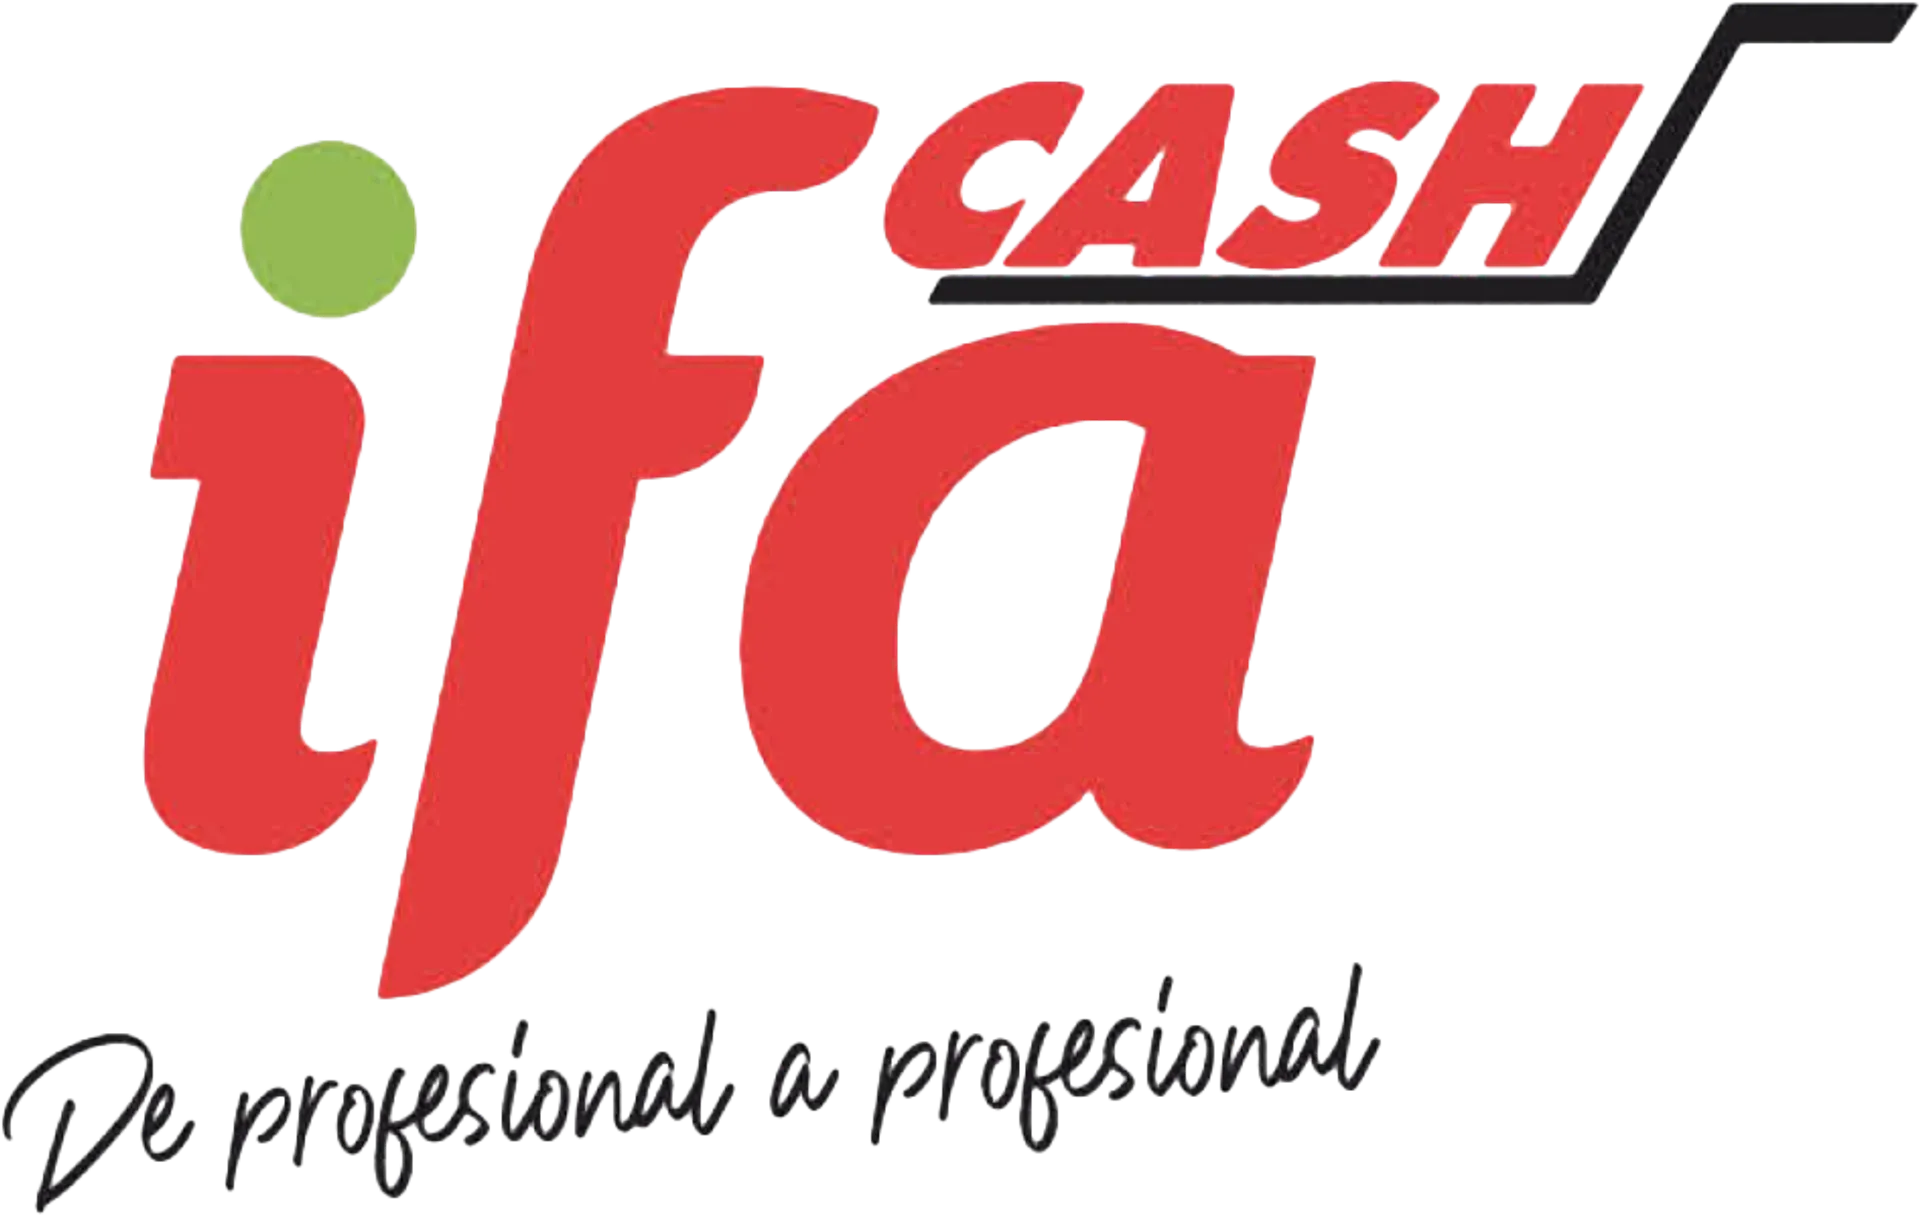 CASH IFA logo